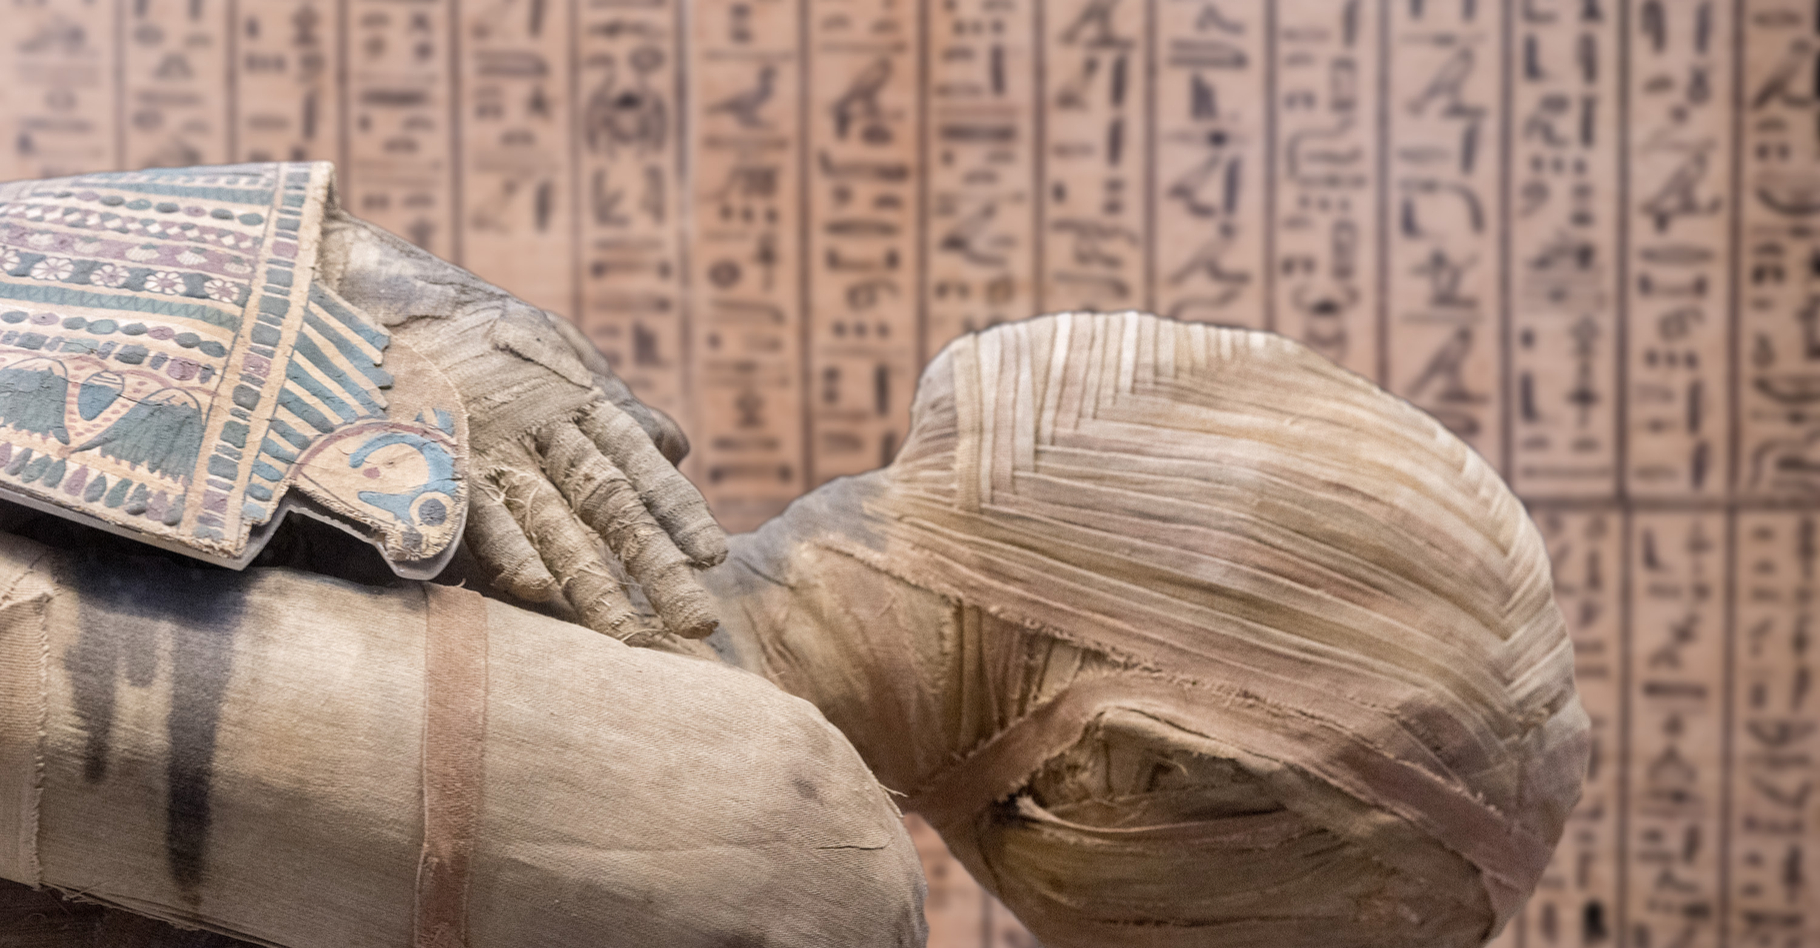 Le visage de momies datées d'il y a 2.000 à 3.000 ans a été reconstruit virtuellement grâce à des données génétiques. © Andréa Izzoti, Shutterstock